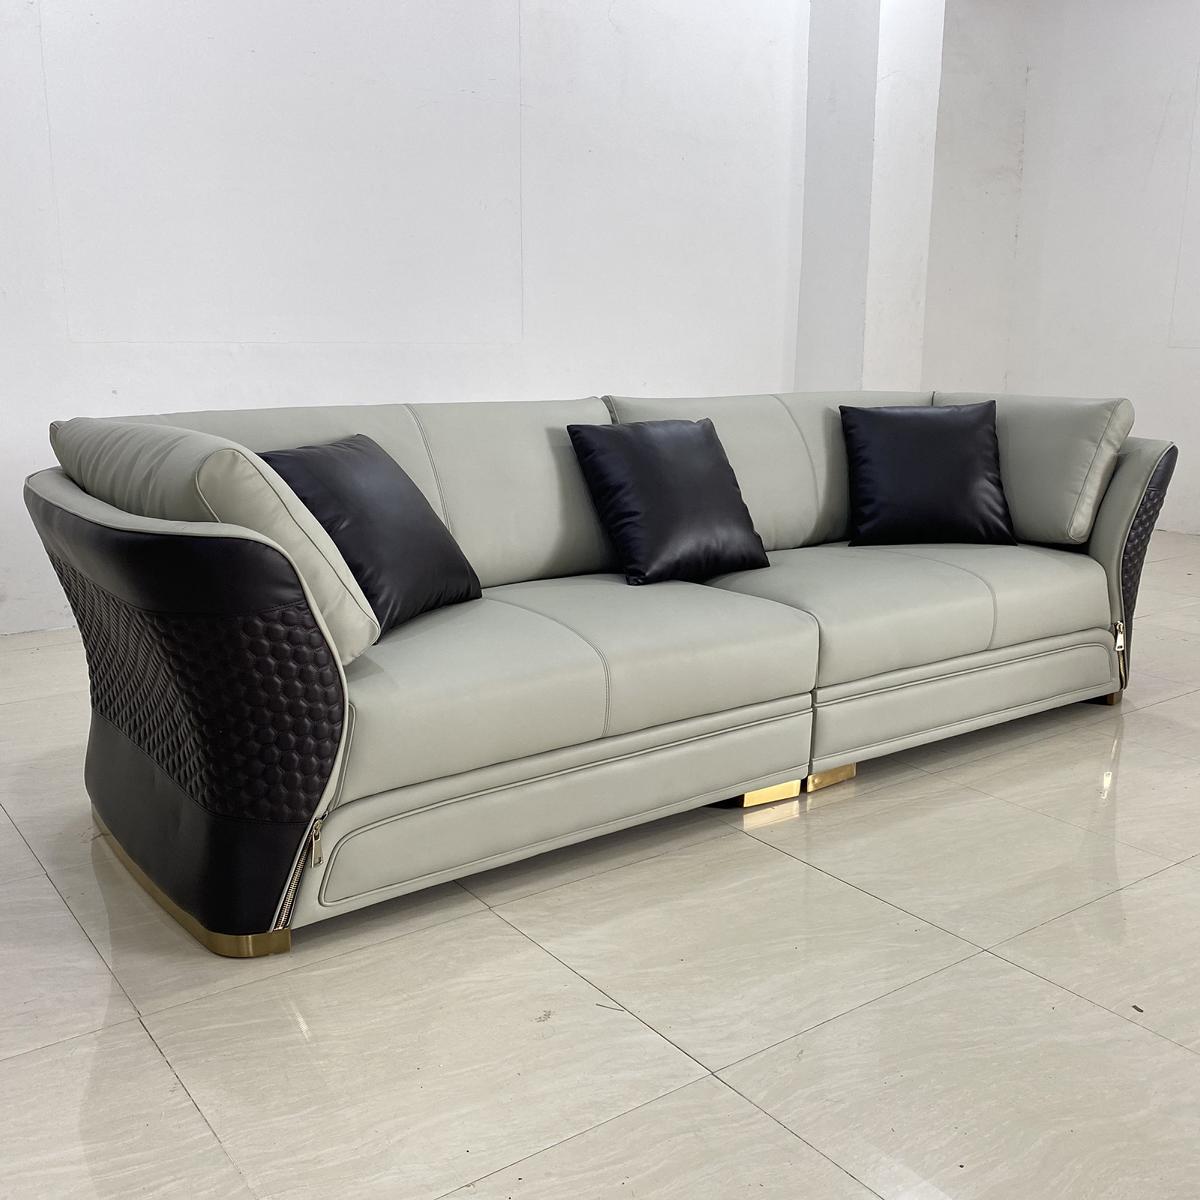 Viersitzer Neu Design Sofa 4 Sitzer Wohnzimmer Couch Couchen Polster